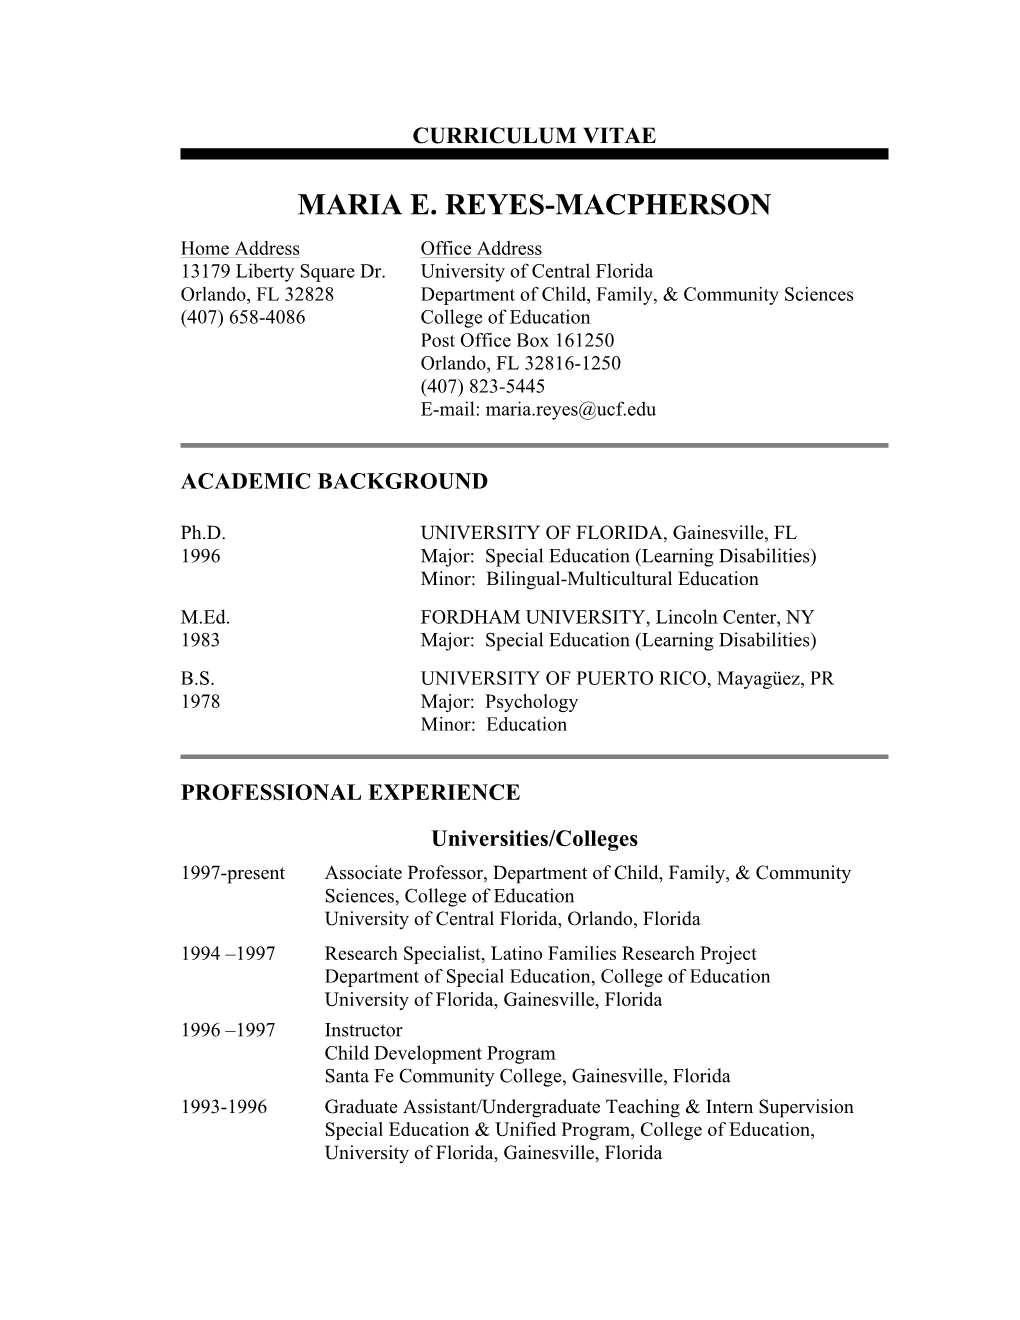 Maria E. Reyes-Macpherson